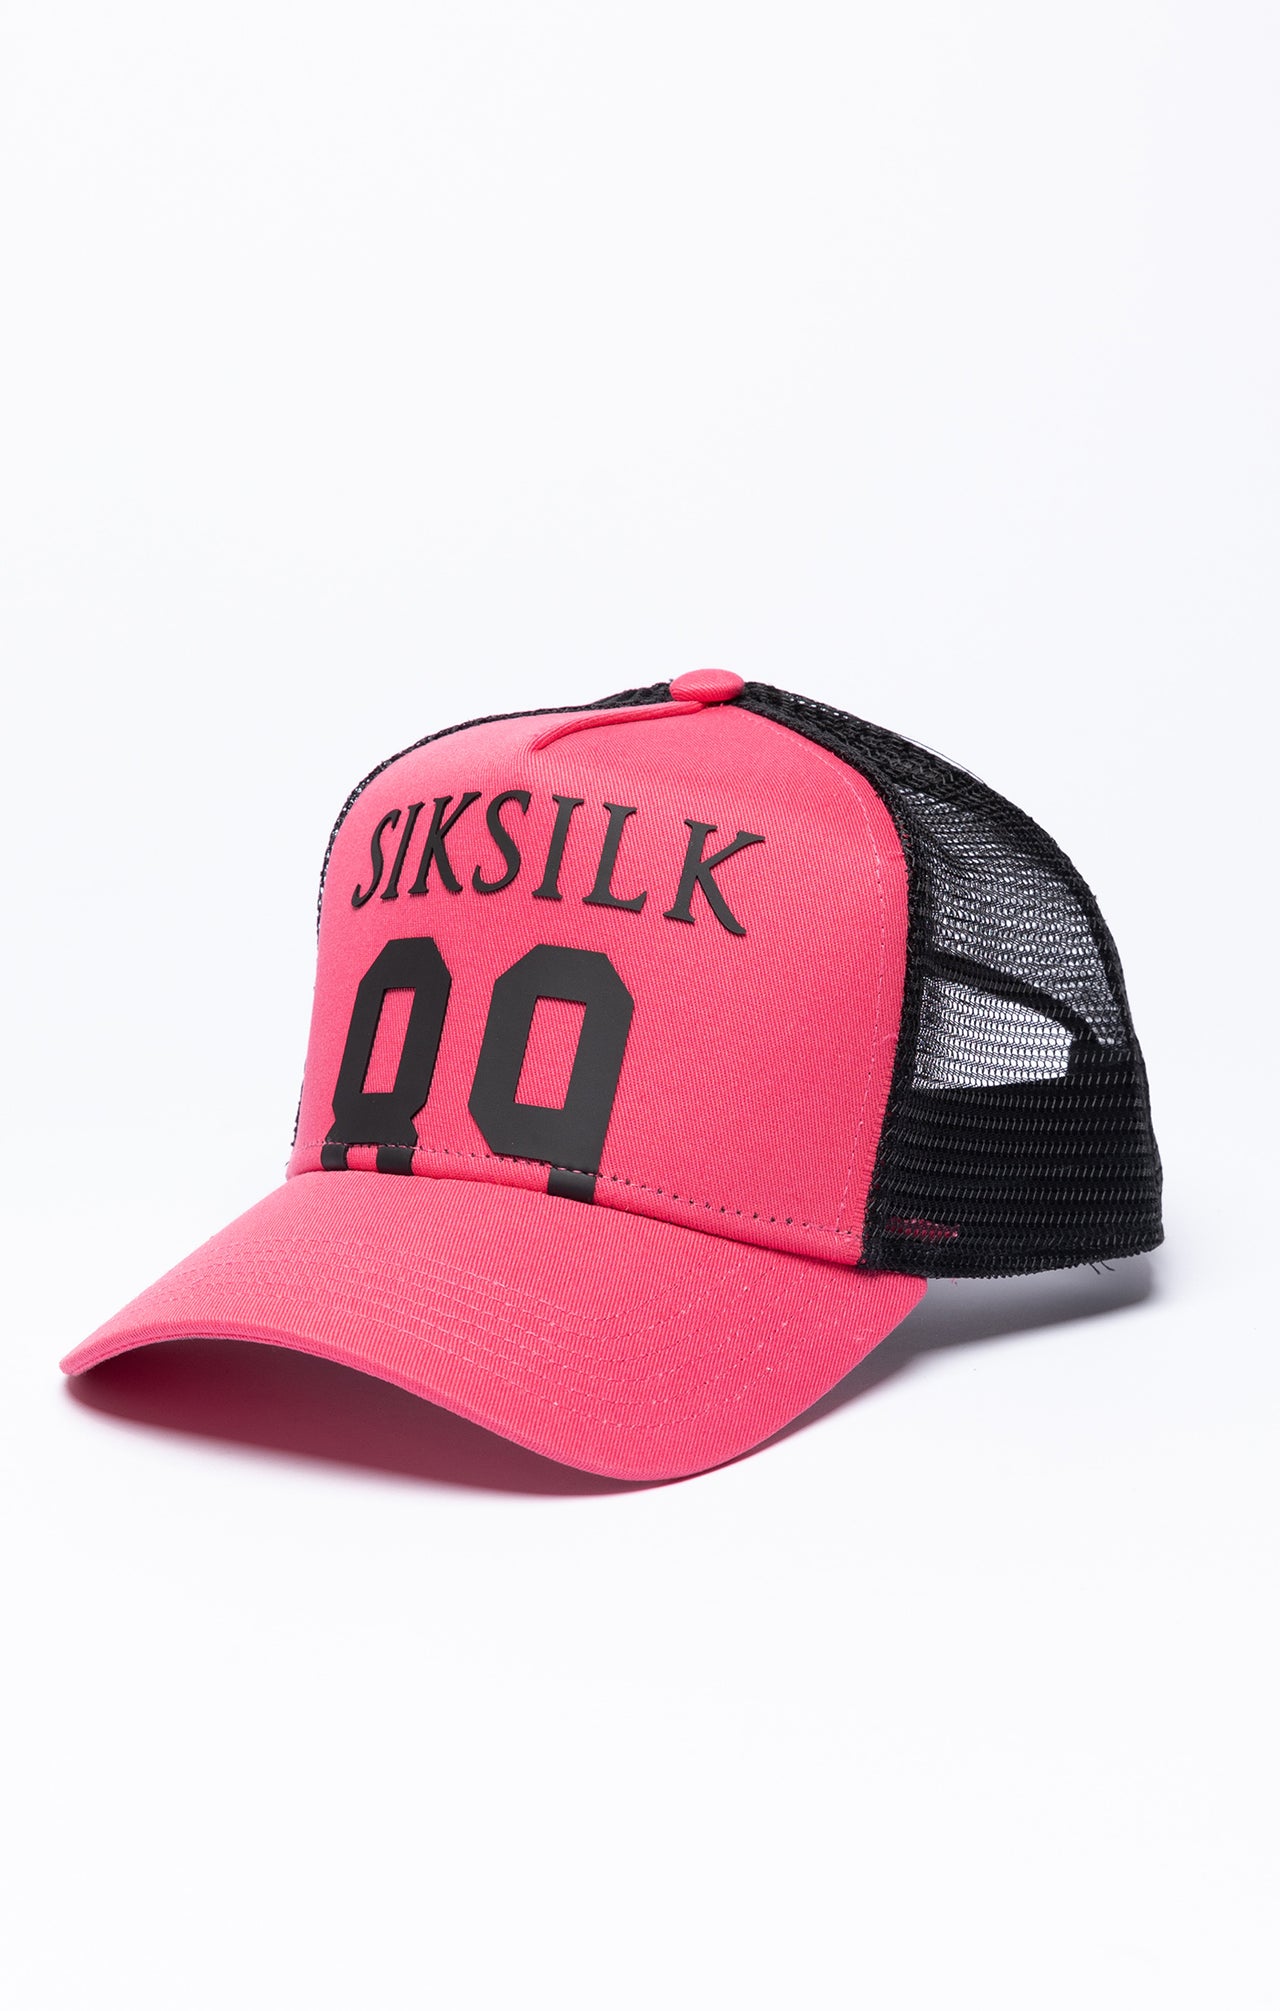 Pink 89 Mesh Trucker Cap